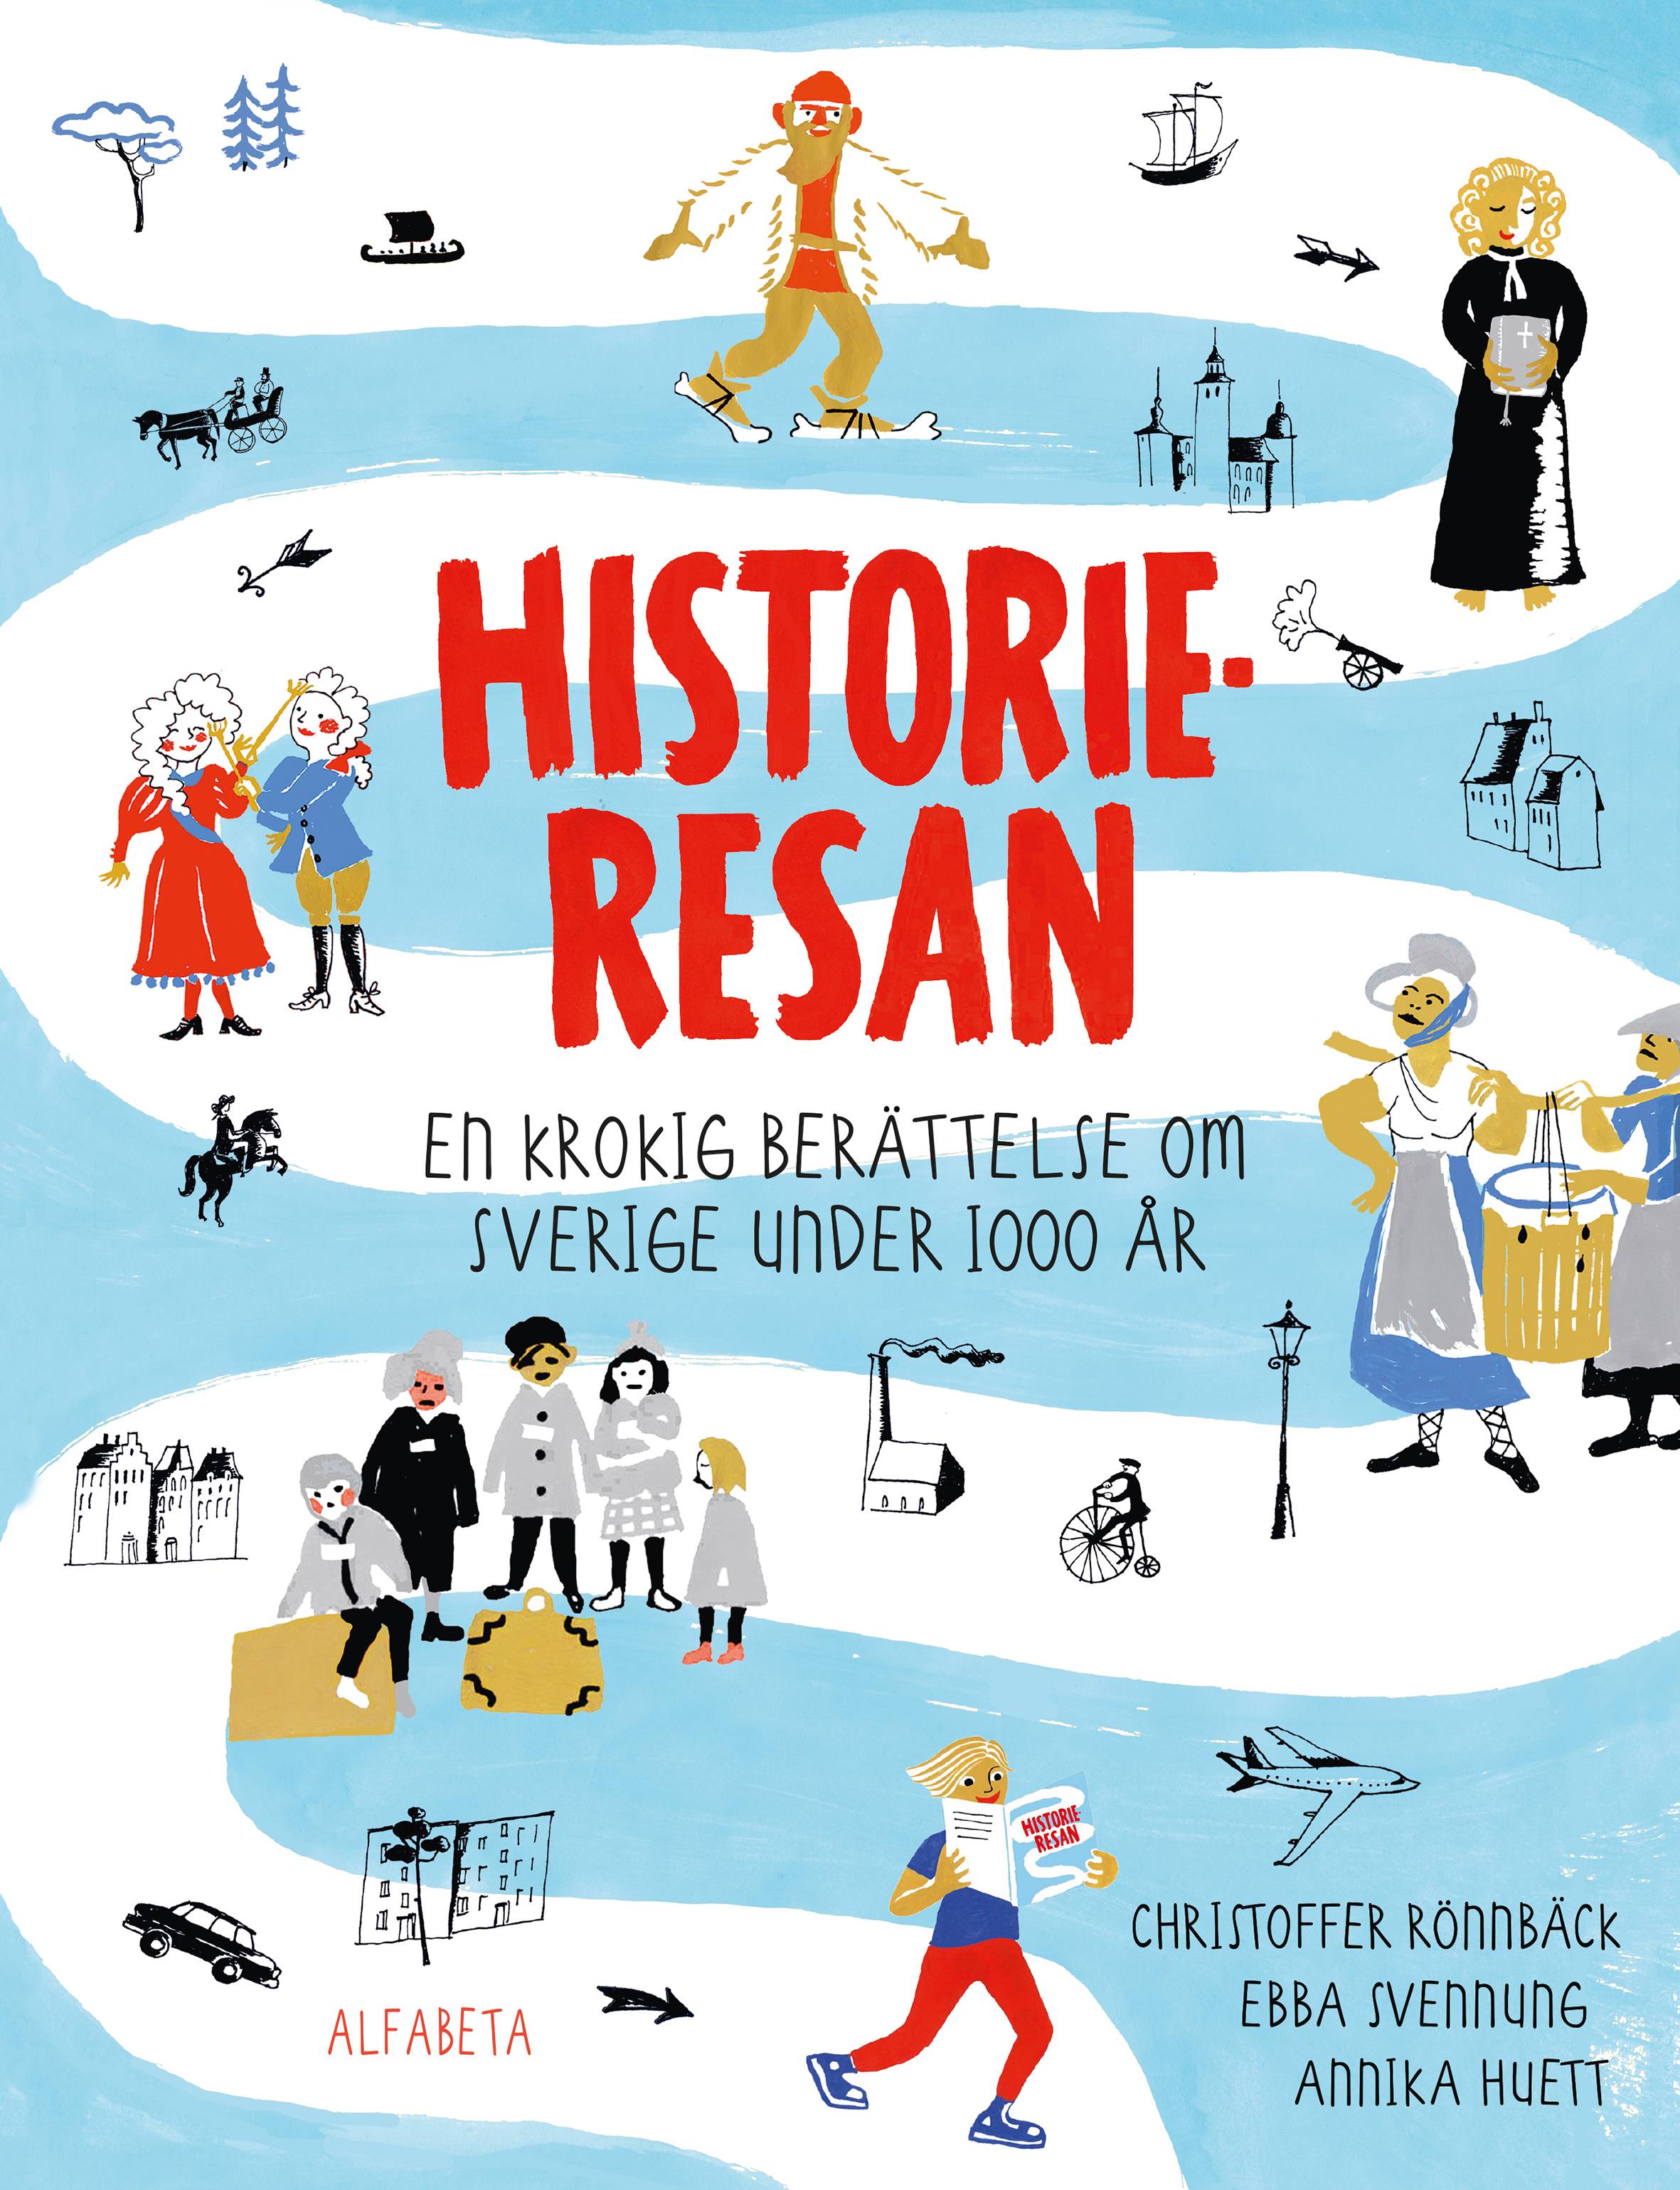 Historieresan - En krokig berättelse om Sverige under 1000 år